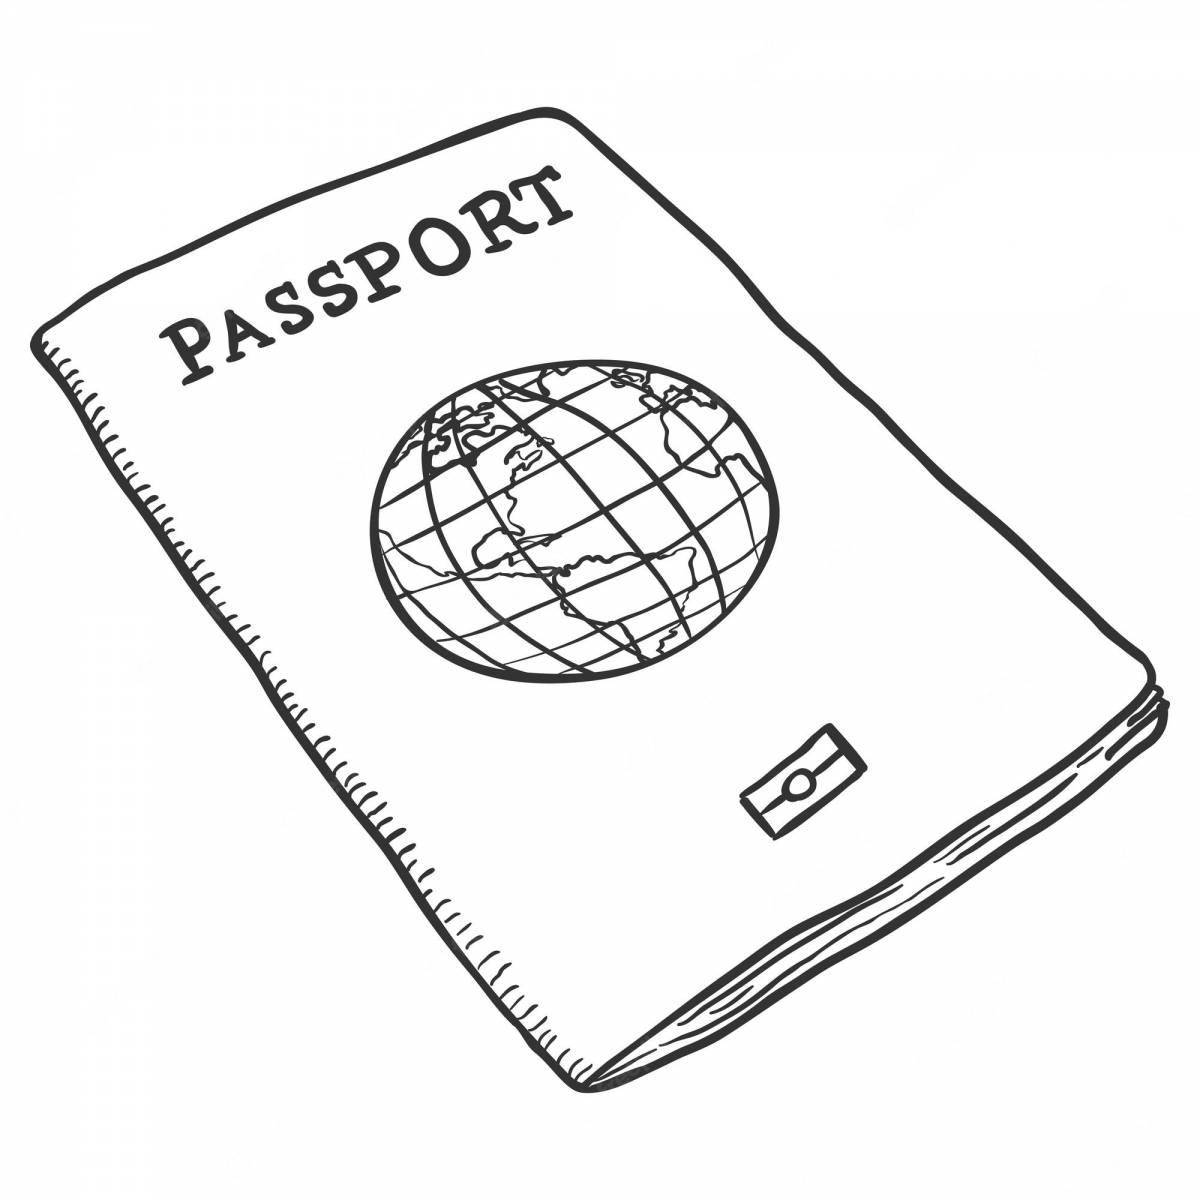 Красочная раскраска паспорта для маленьких историков